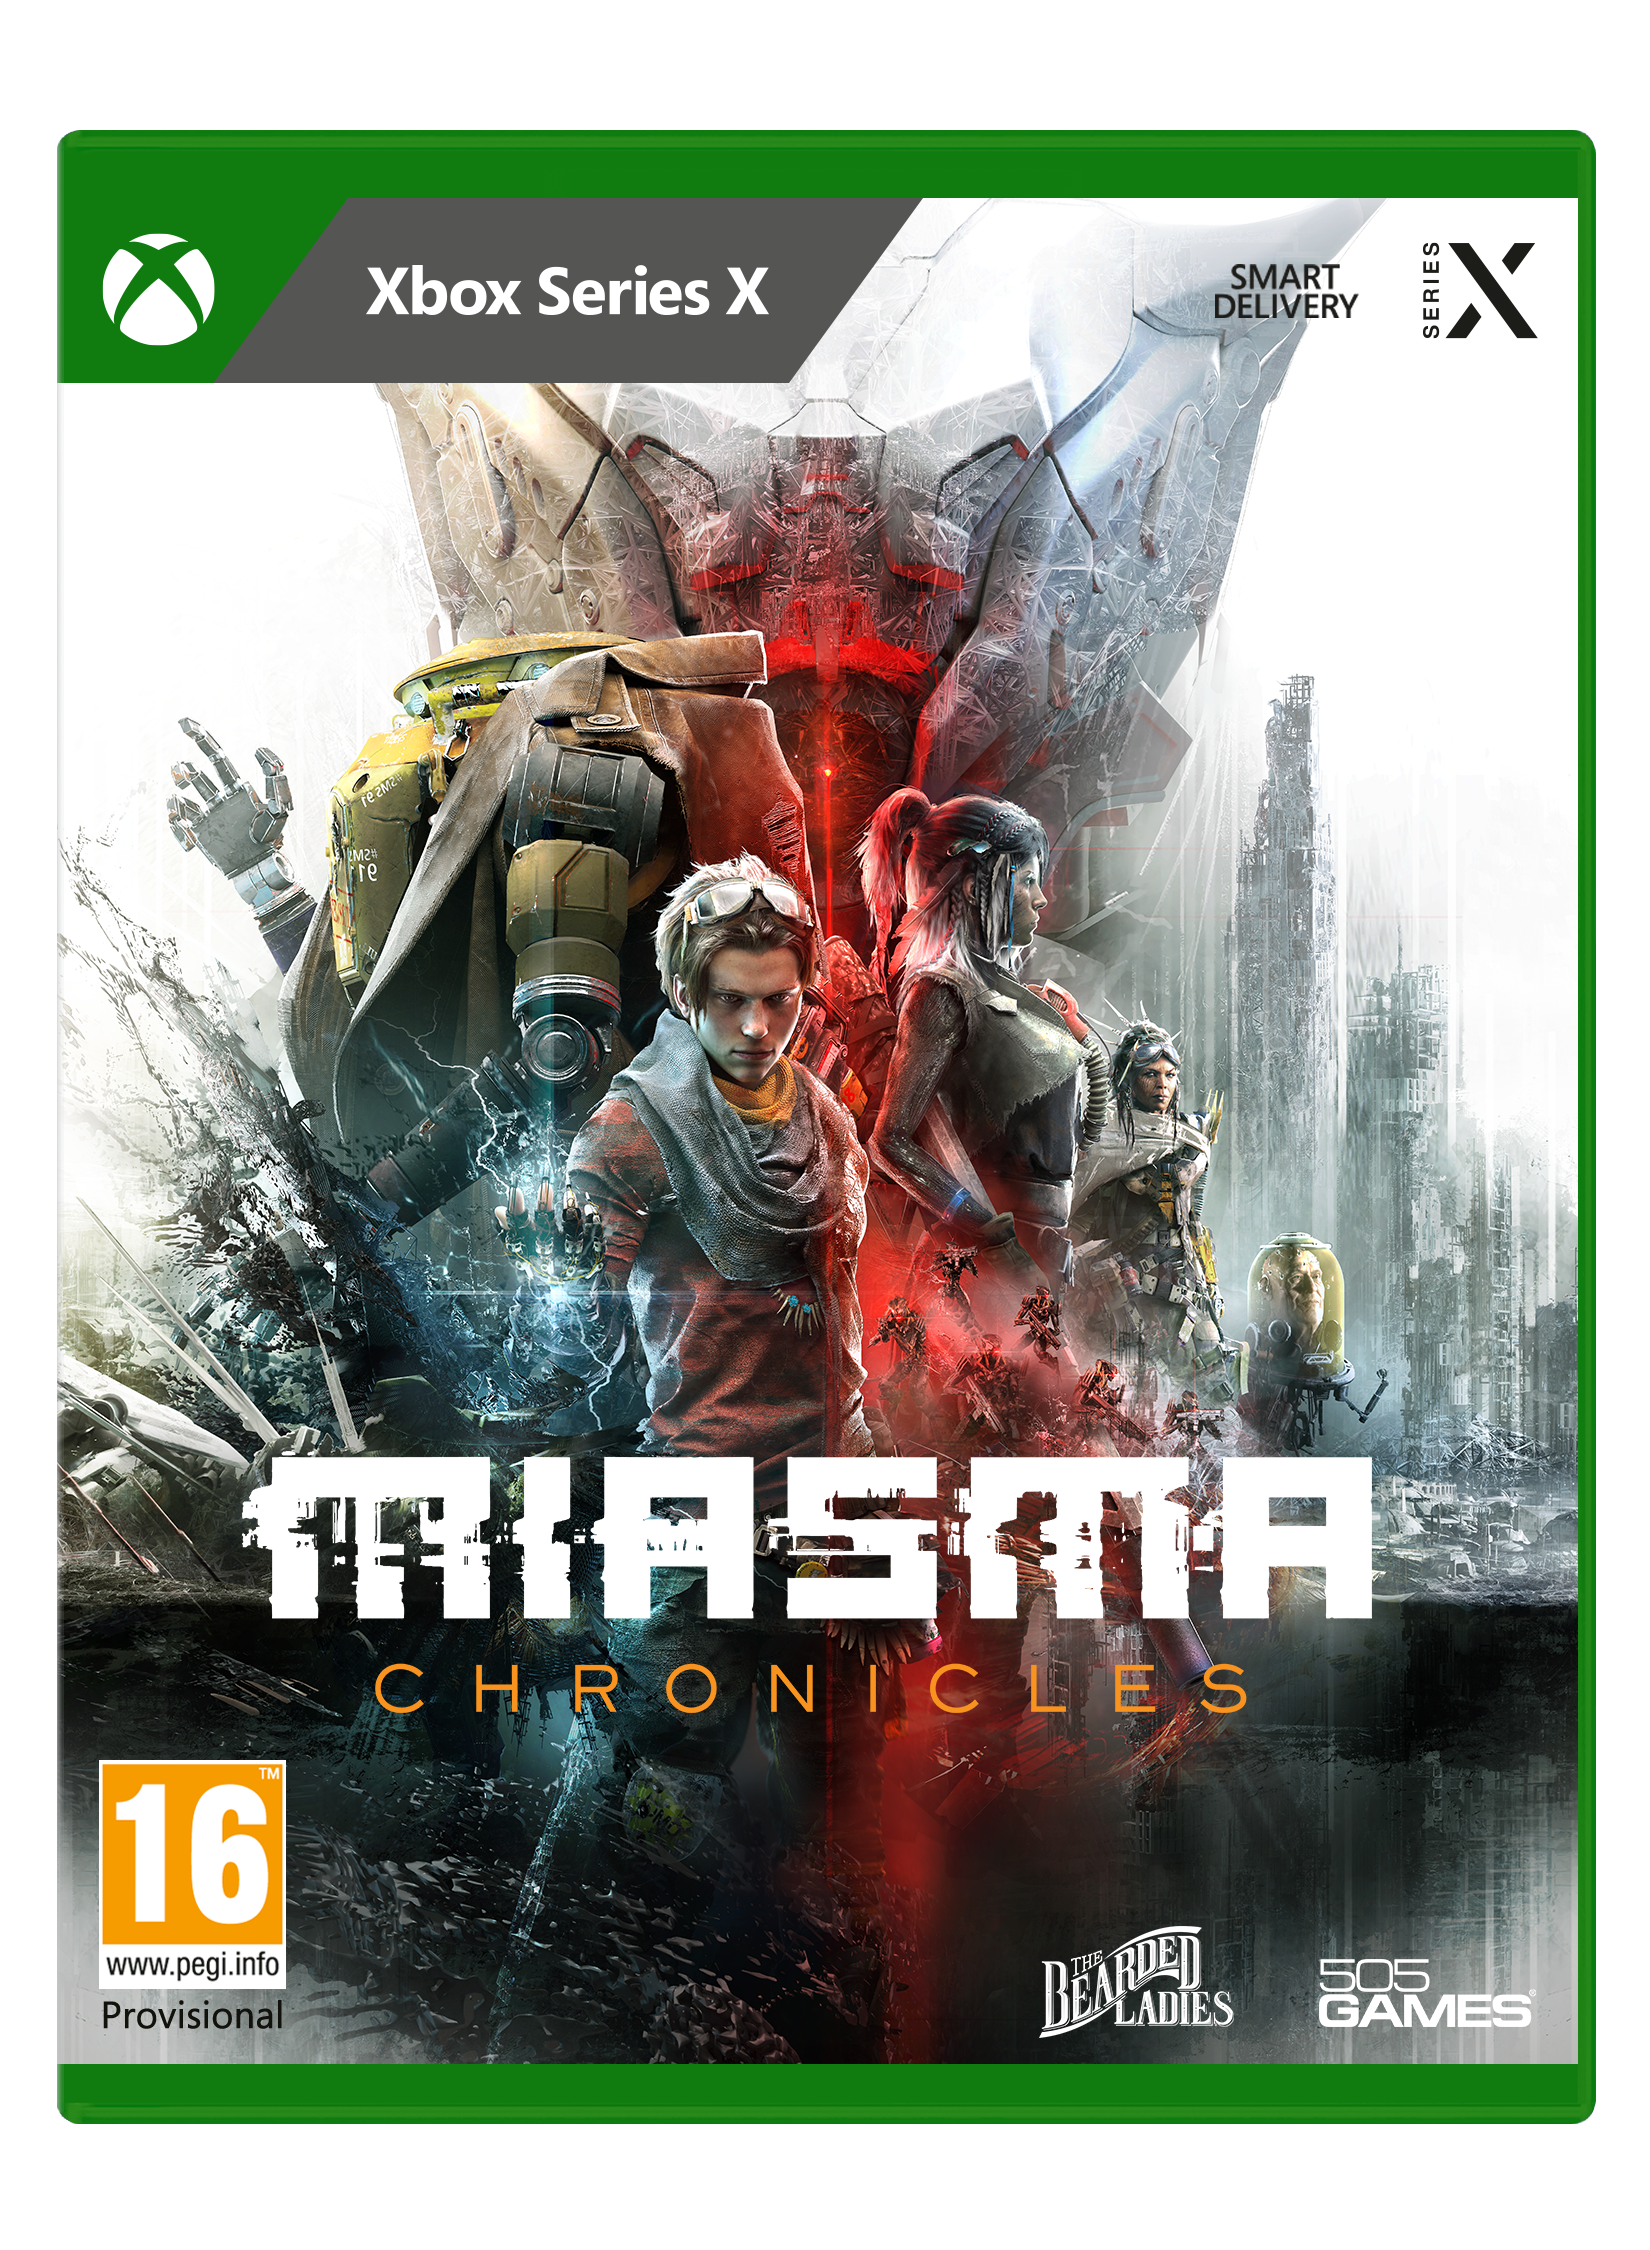 Xbox Series X Miasma Chronicles - Albagame